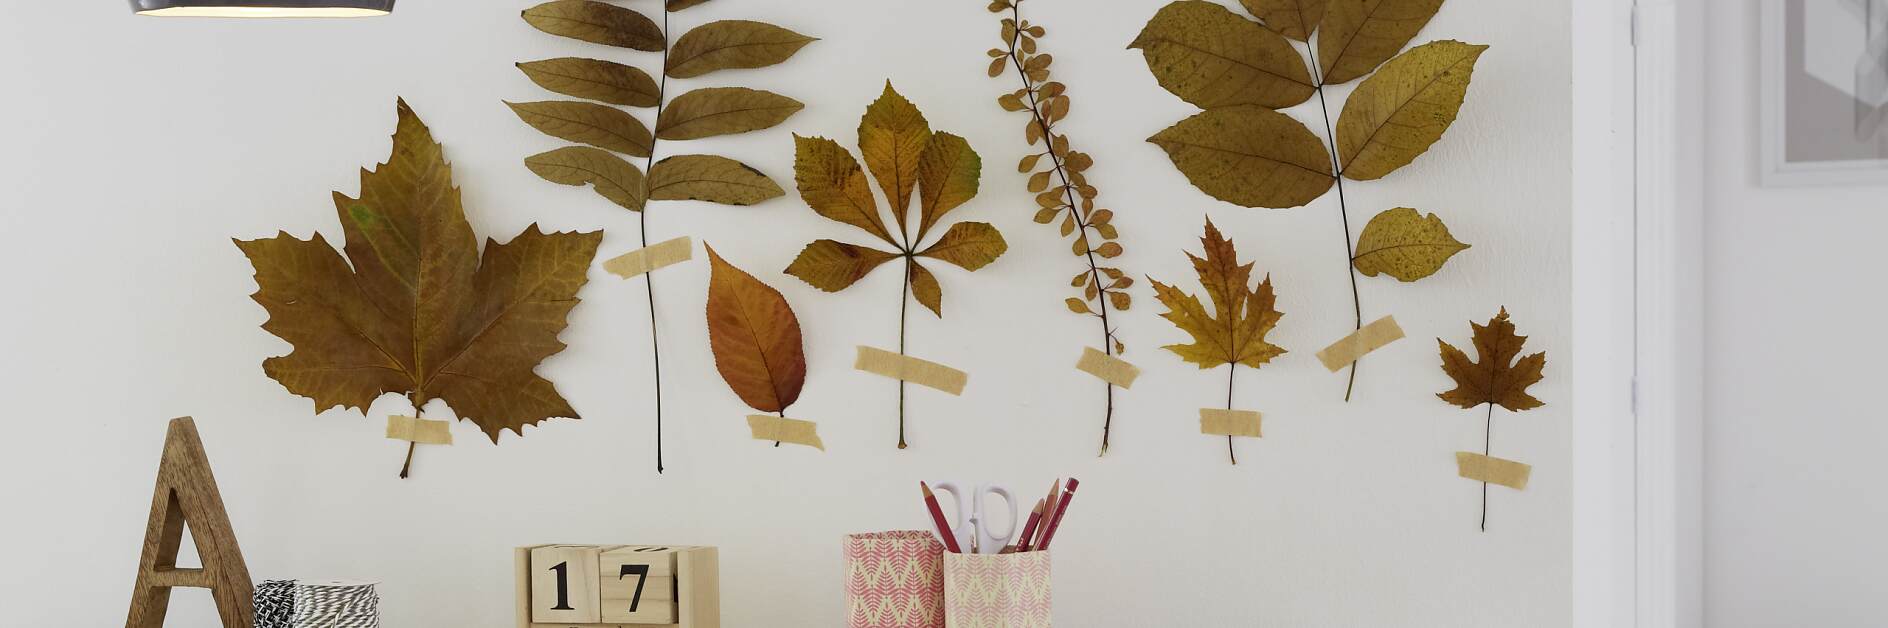 Efterårsblade på væggen – hvordan vi gør det